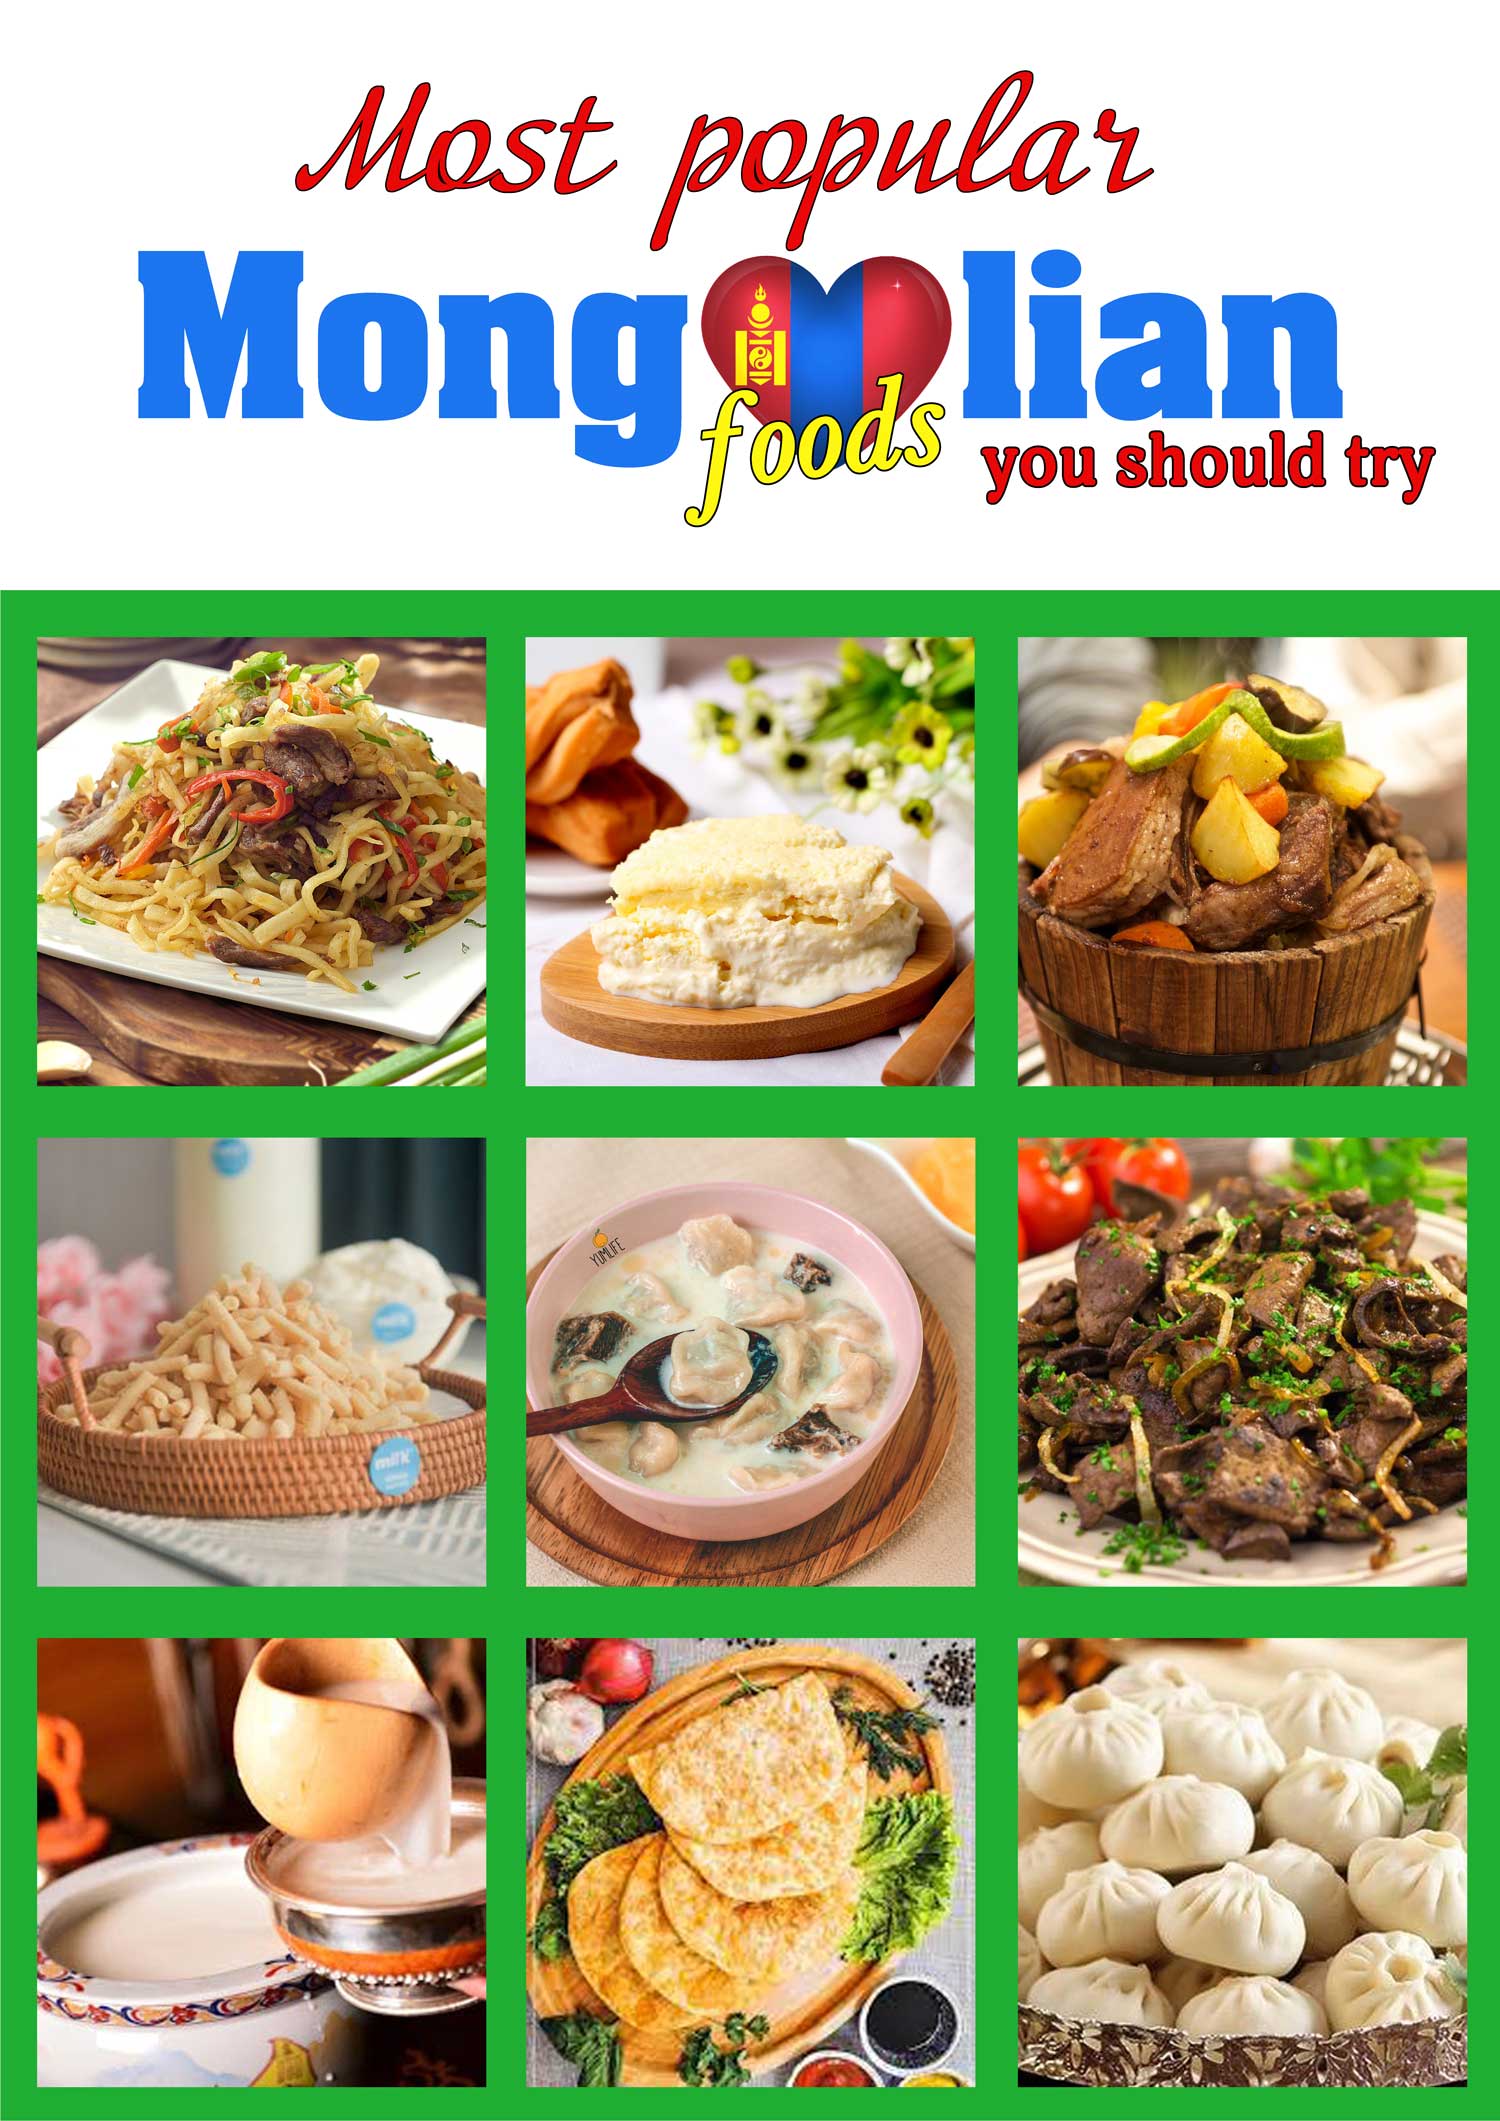 Mongolian foods